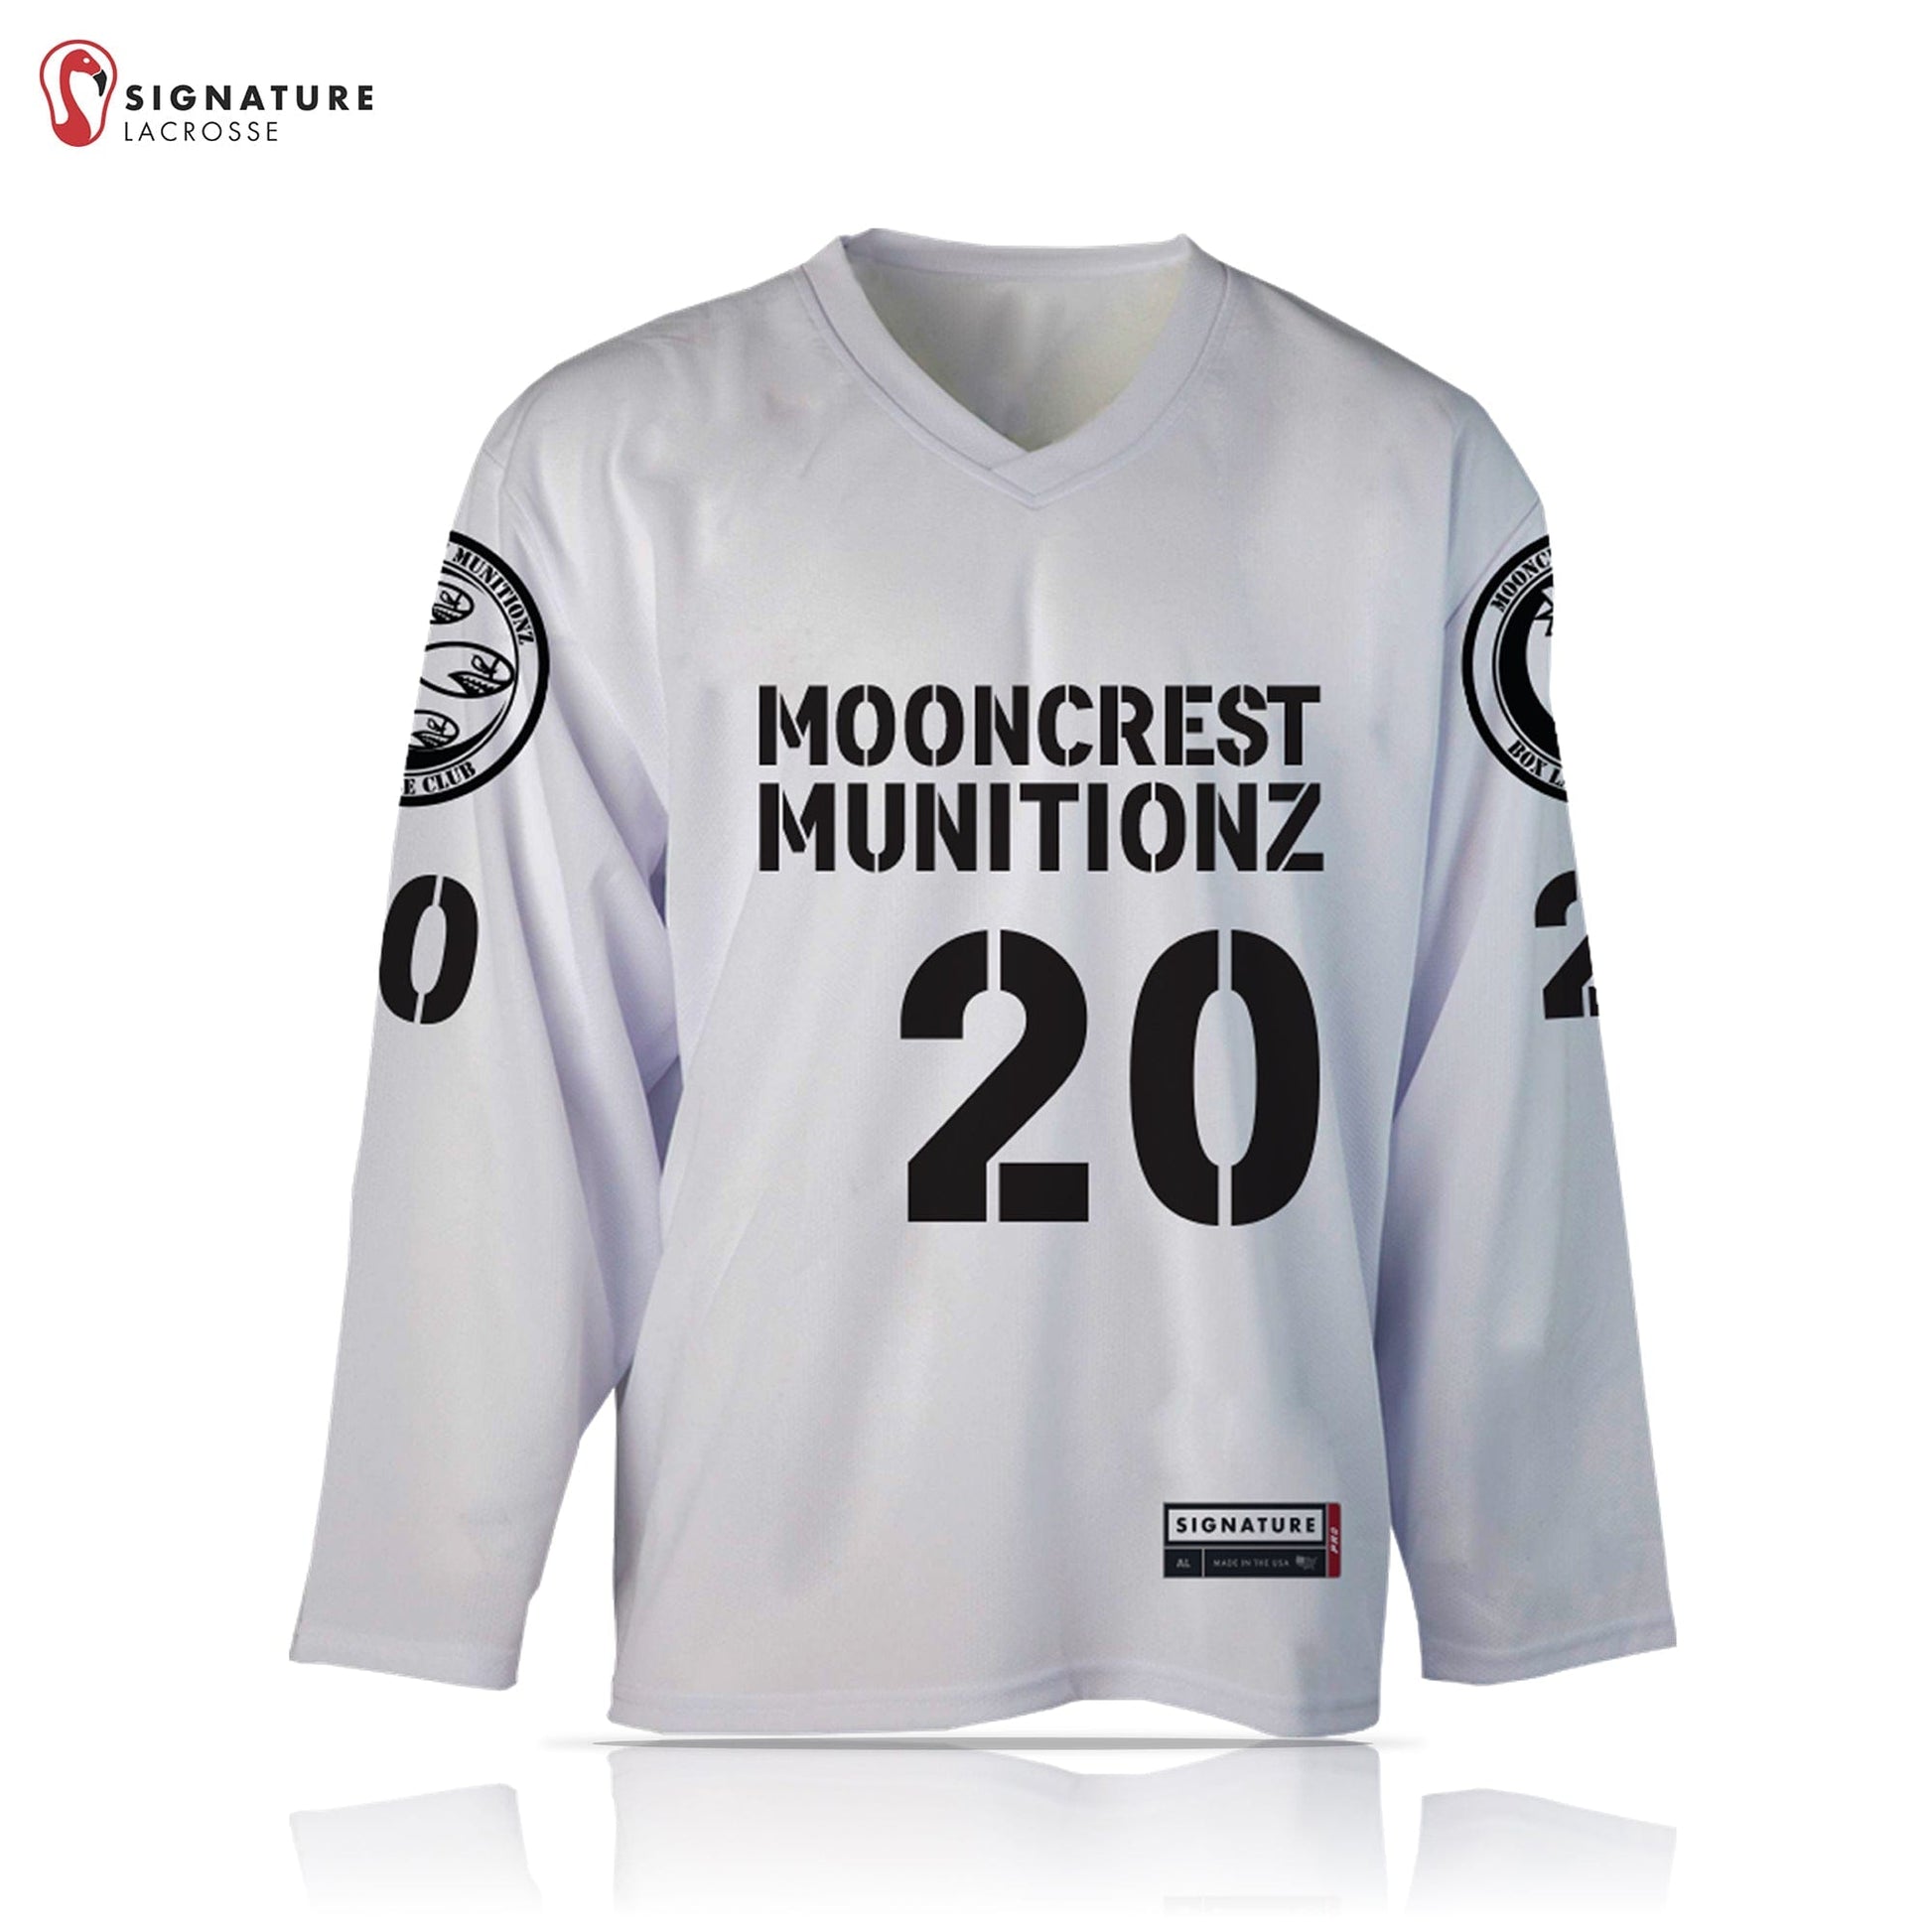 Mooncrest Munitionz Box Lacrosse Men’s 2 Piece White Pro Box Jersey Package Signature Lacrosse